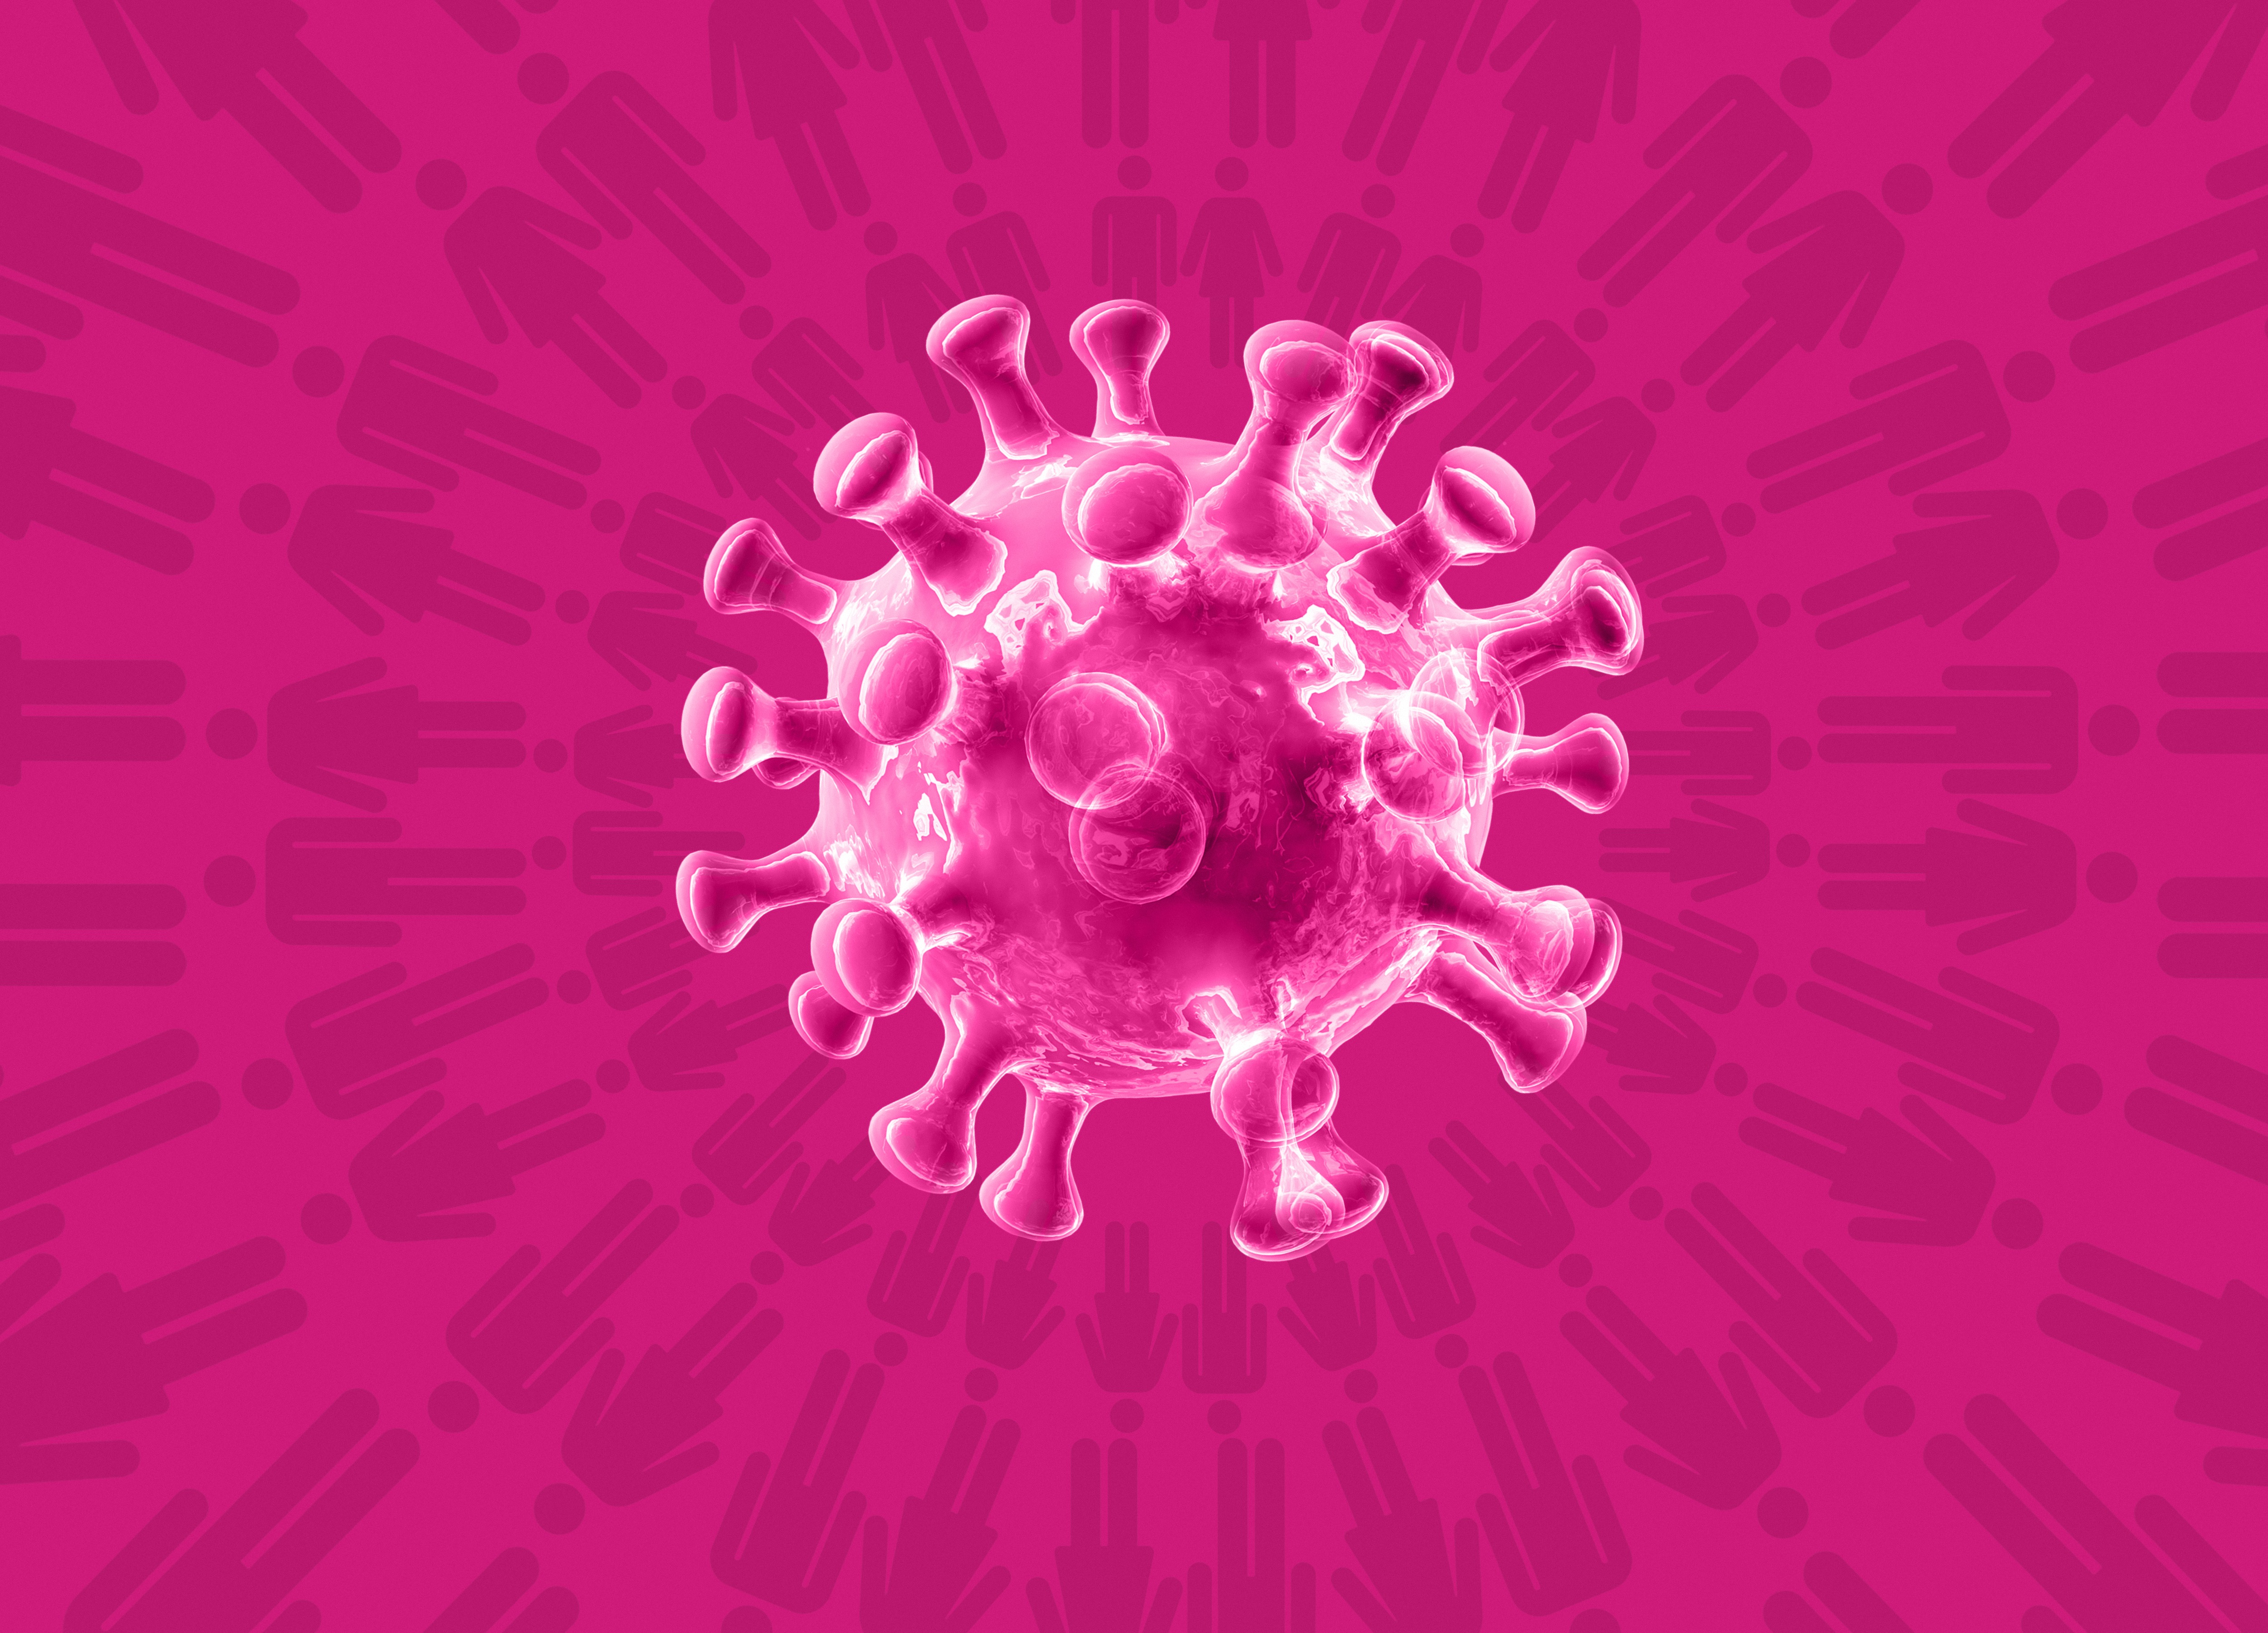 Két különböző vírus egyesülésével is létrejöhetett az új koronavírus